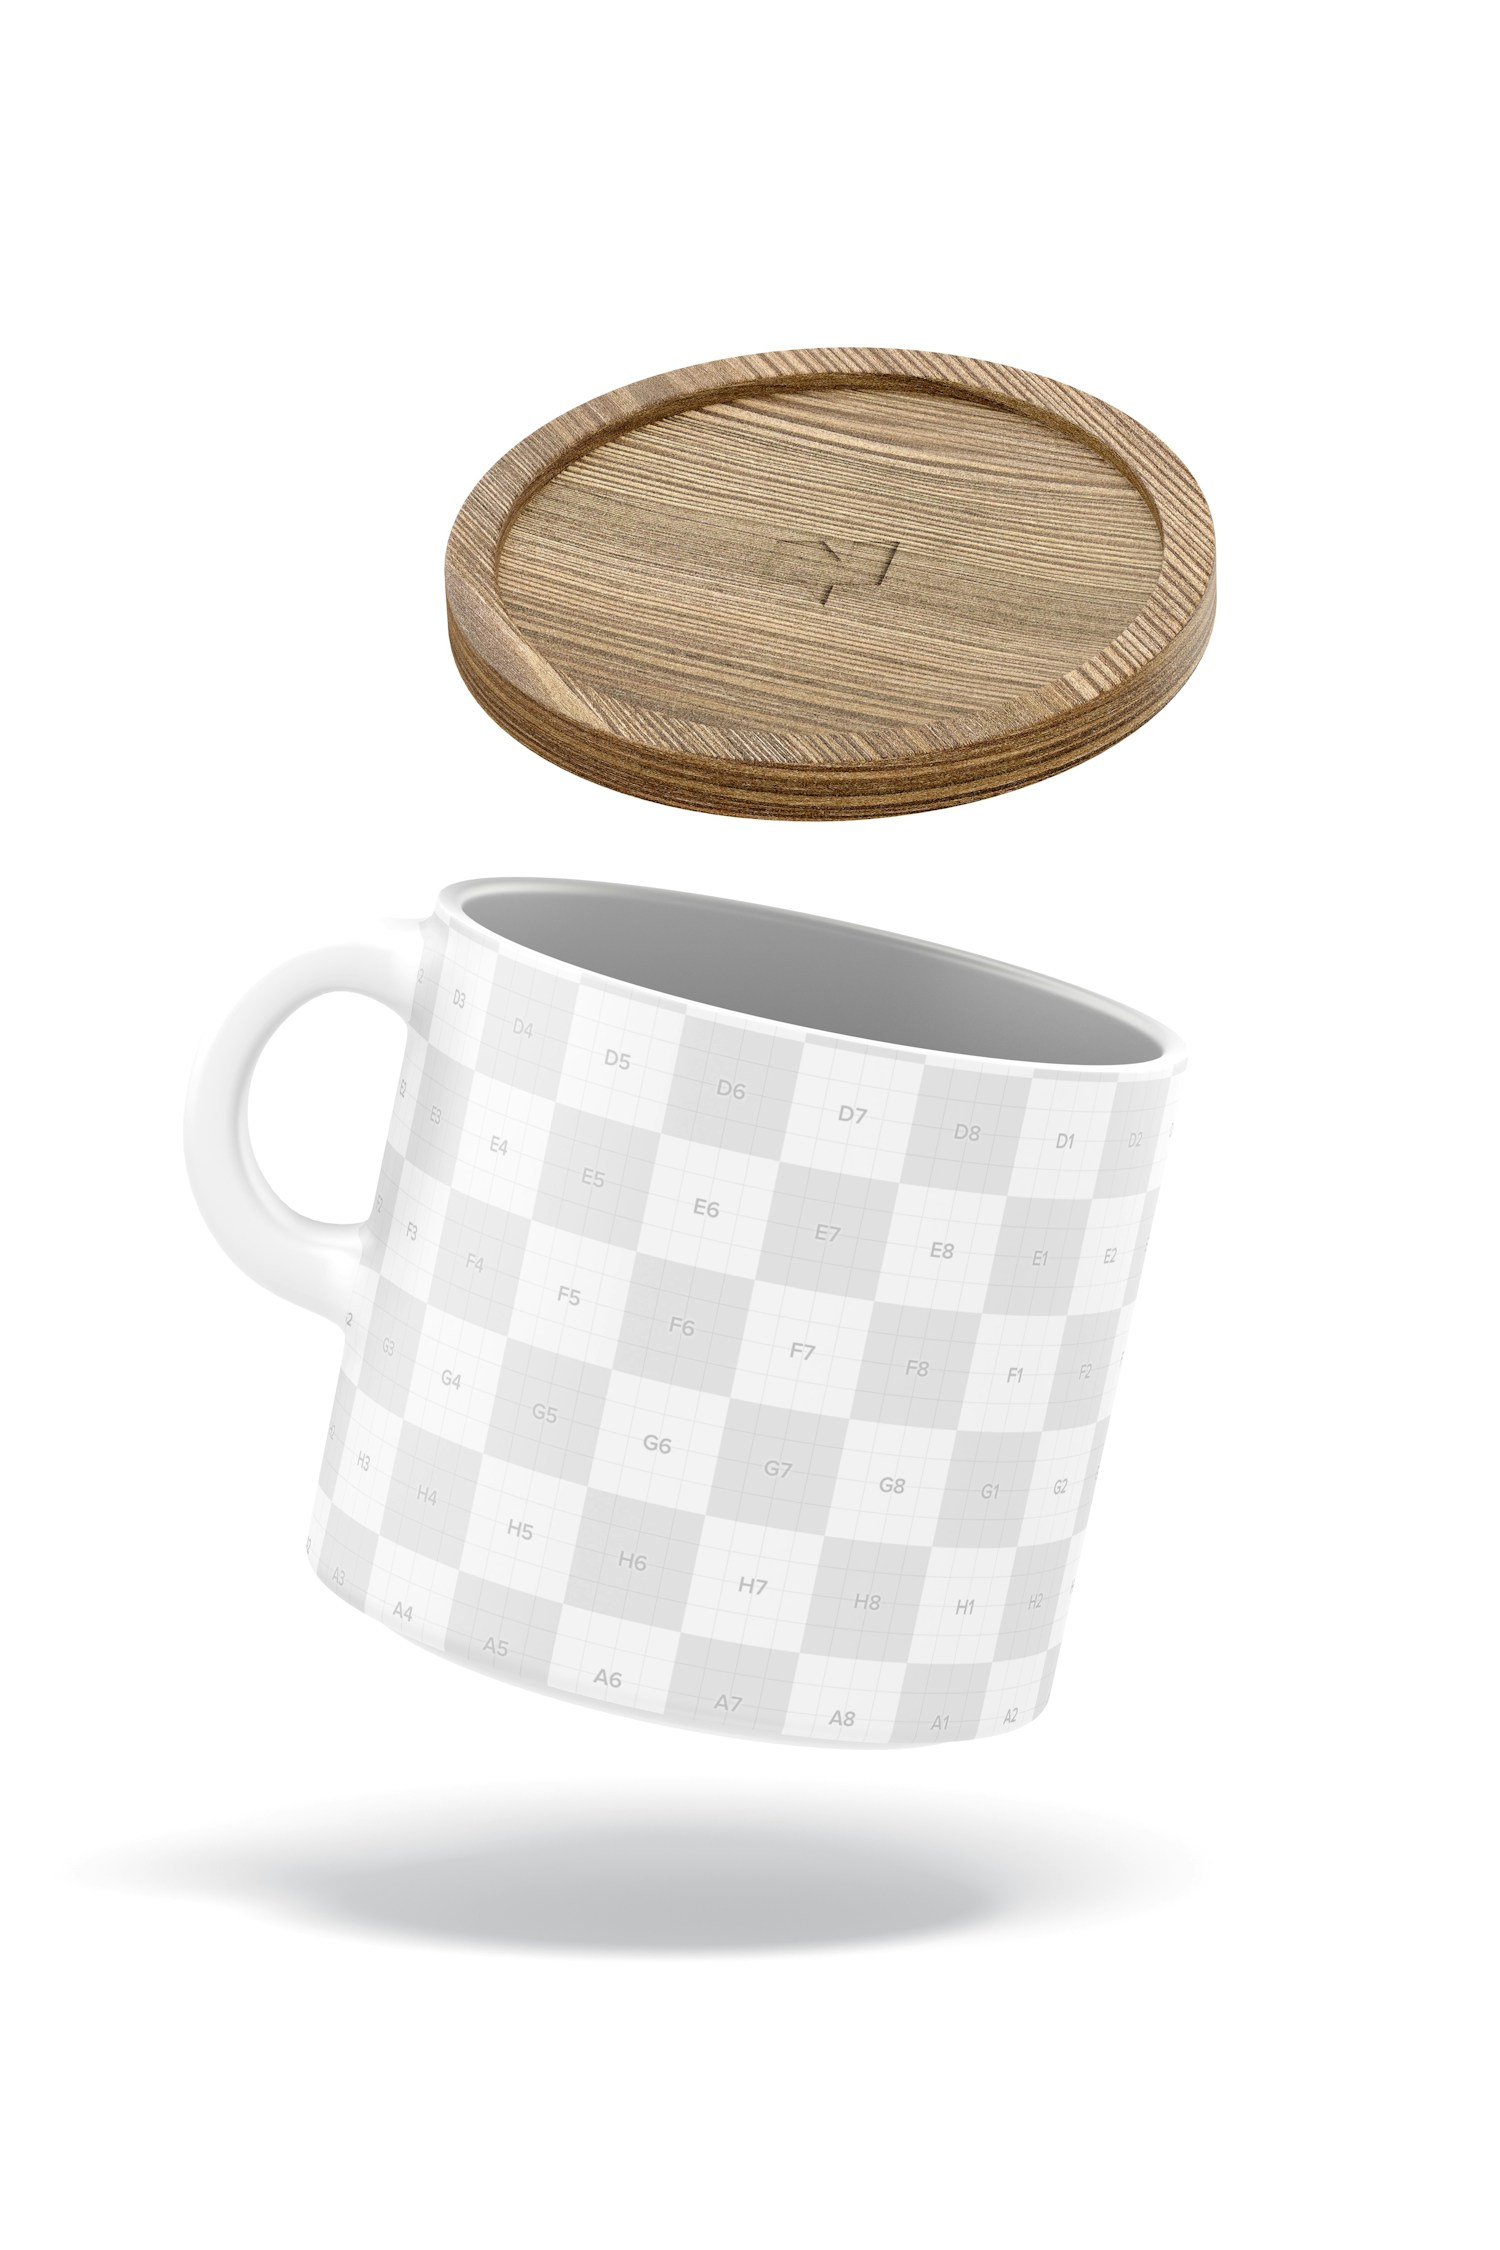 10 oz Ceramic Mug with Bamboo Lid Mockup, Floating